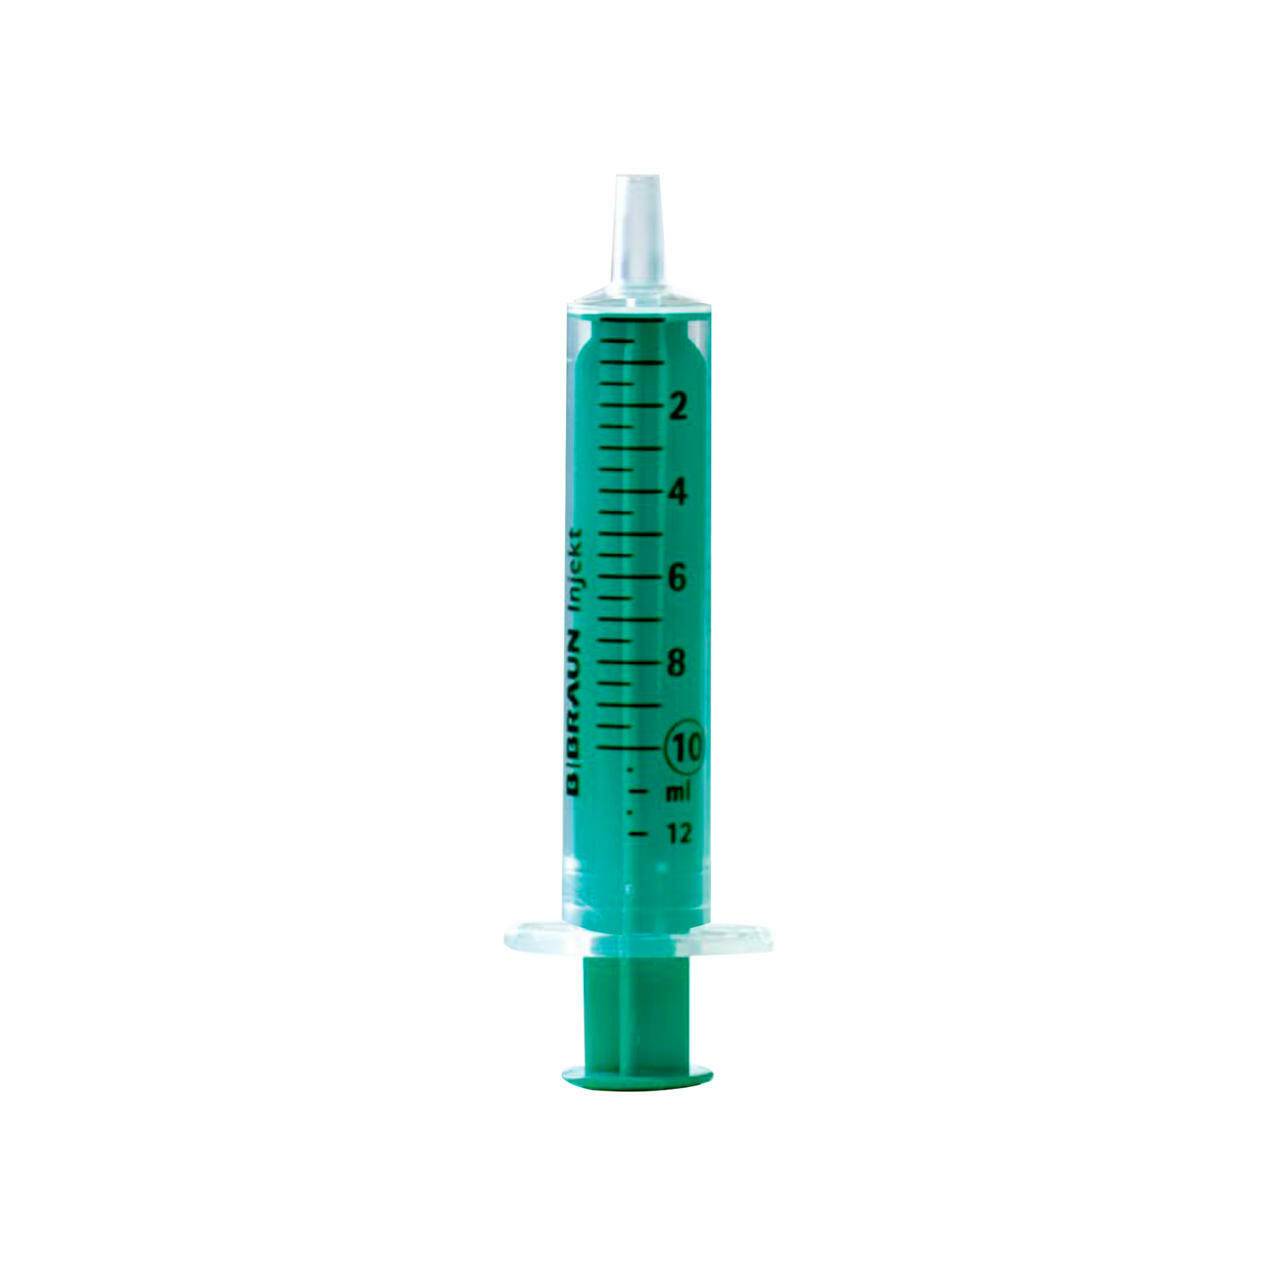 10ml BBraun Silicon Oil Free Injekt Syringe - UKMEDI